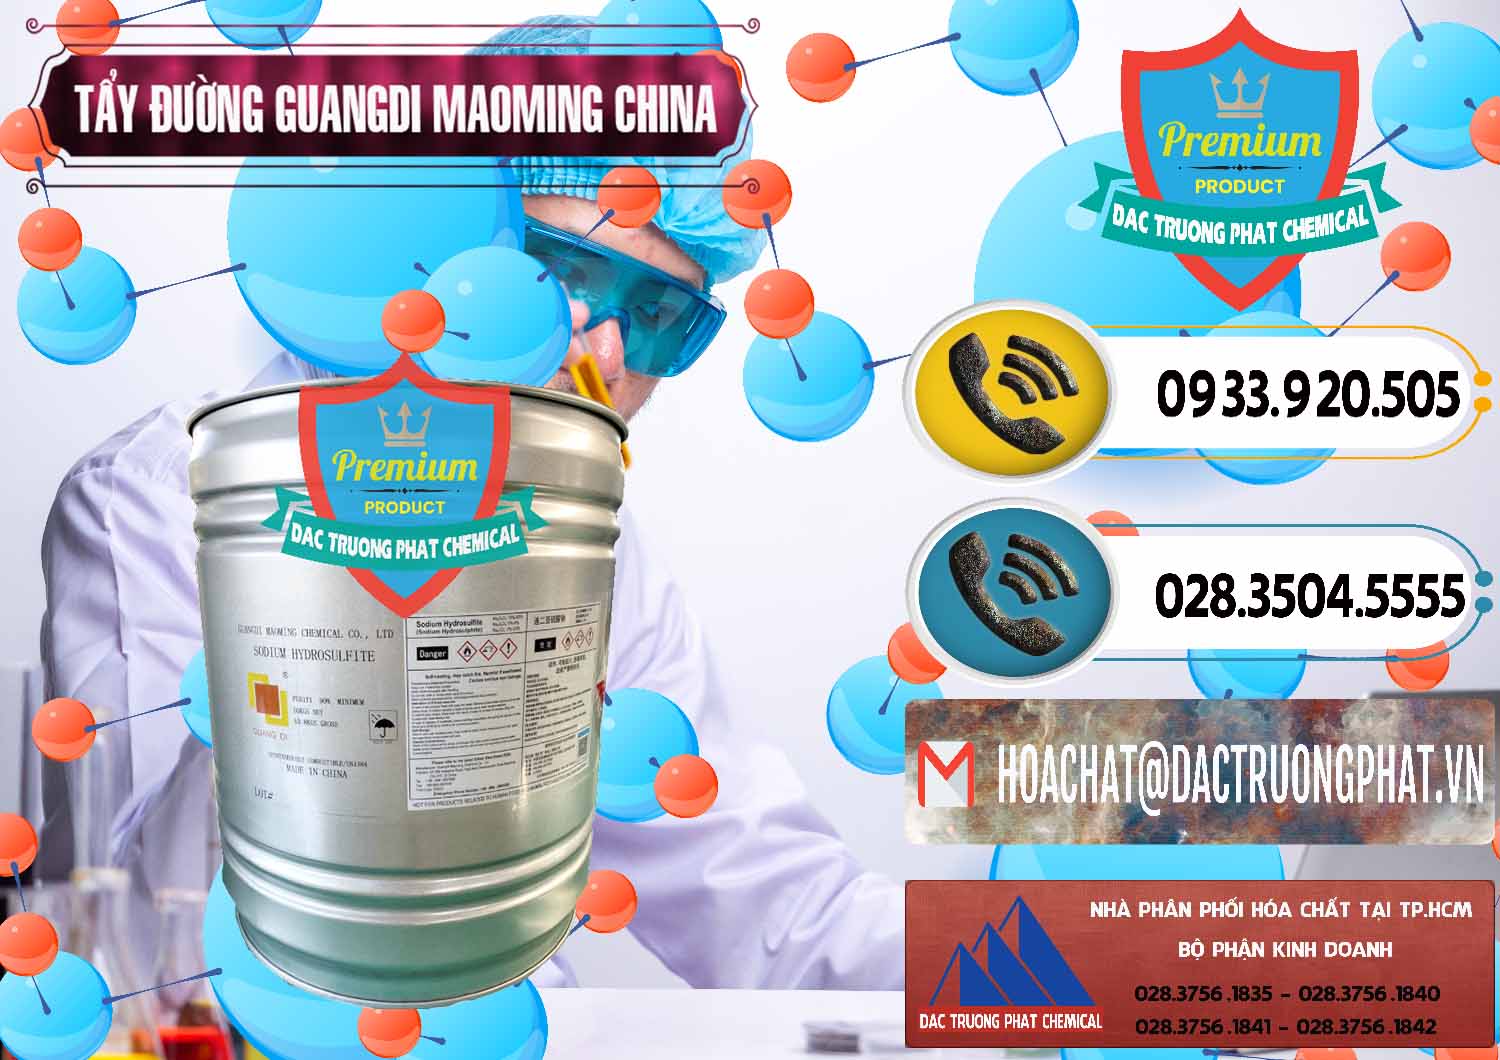 Cung ứng & bán Tẩy Đường - NA2S2O4 Guangdi Maoming Thùng Xám Trung Quốc China - 0402 - Công ty cung cấp - bán hóa chất tại TP.HCM - hoachatdetnhuom.vn